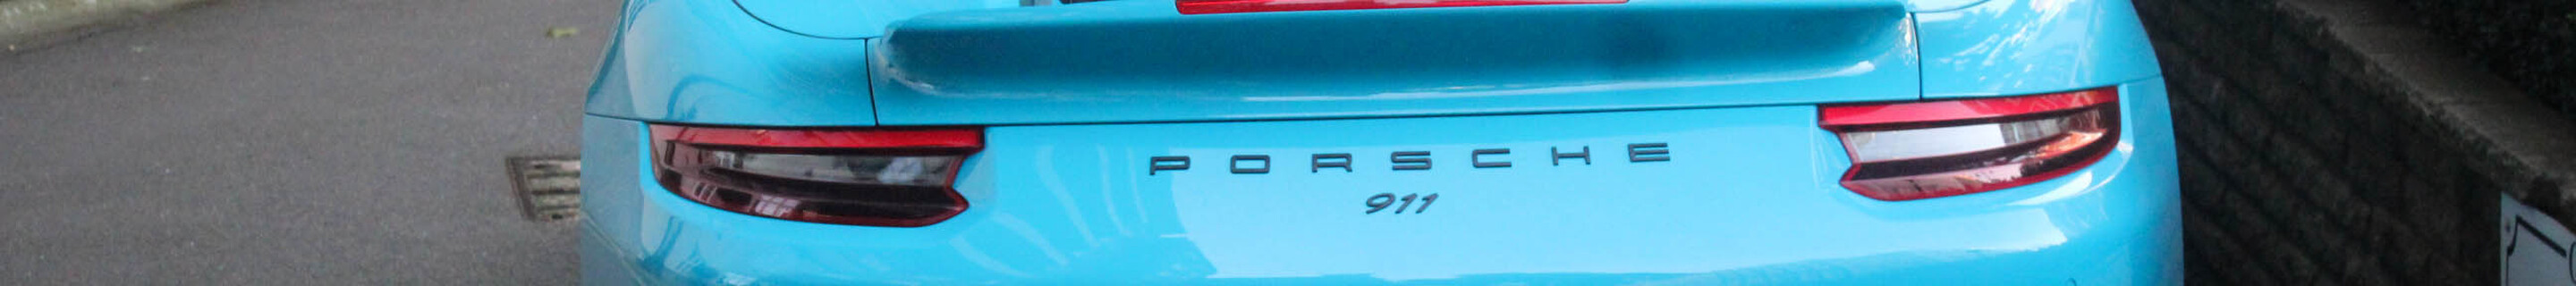 Porsche 991 Turbo Cabriolet MkII